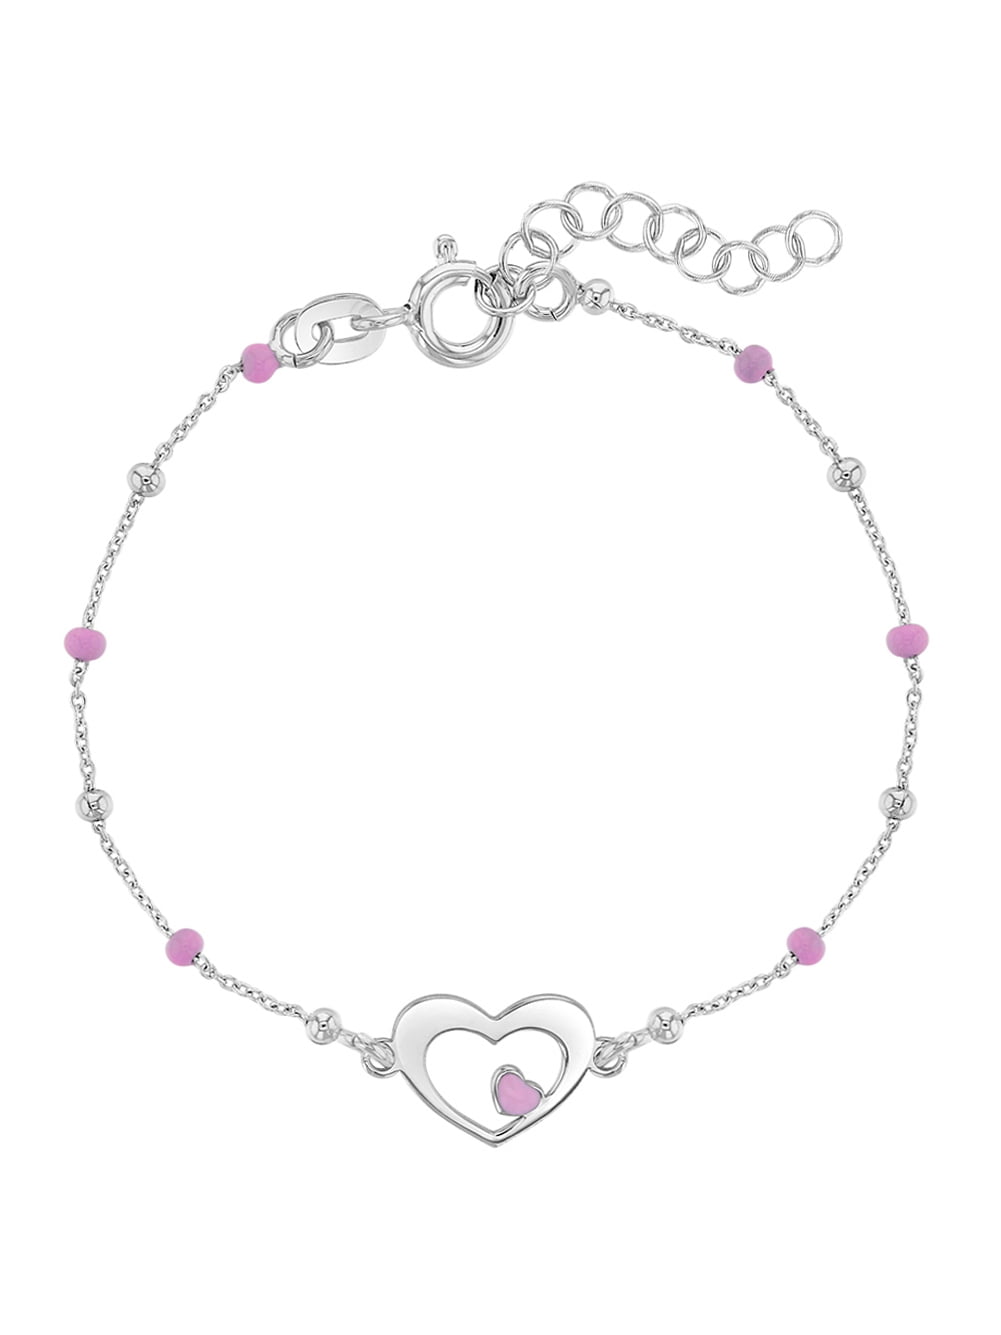 In Season Jewelry - 925 Sterling Silver Heart & Enamel Bead Bracelet ...